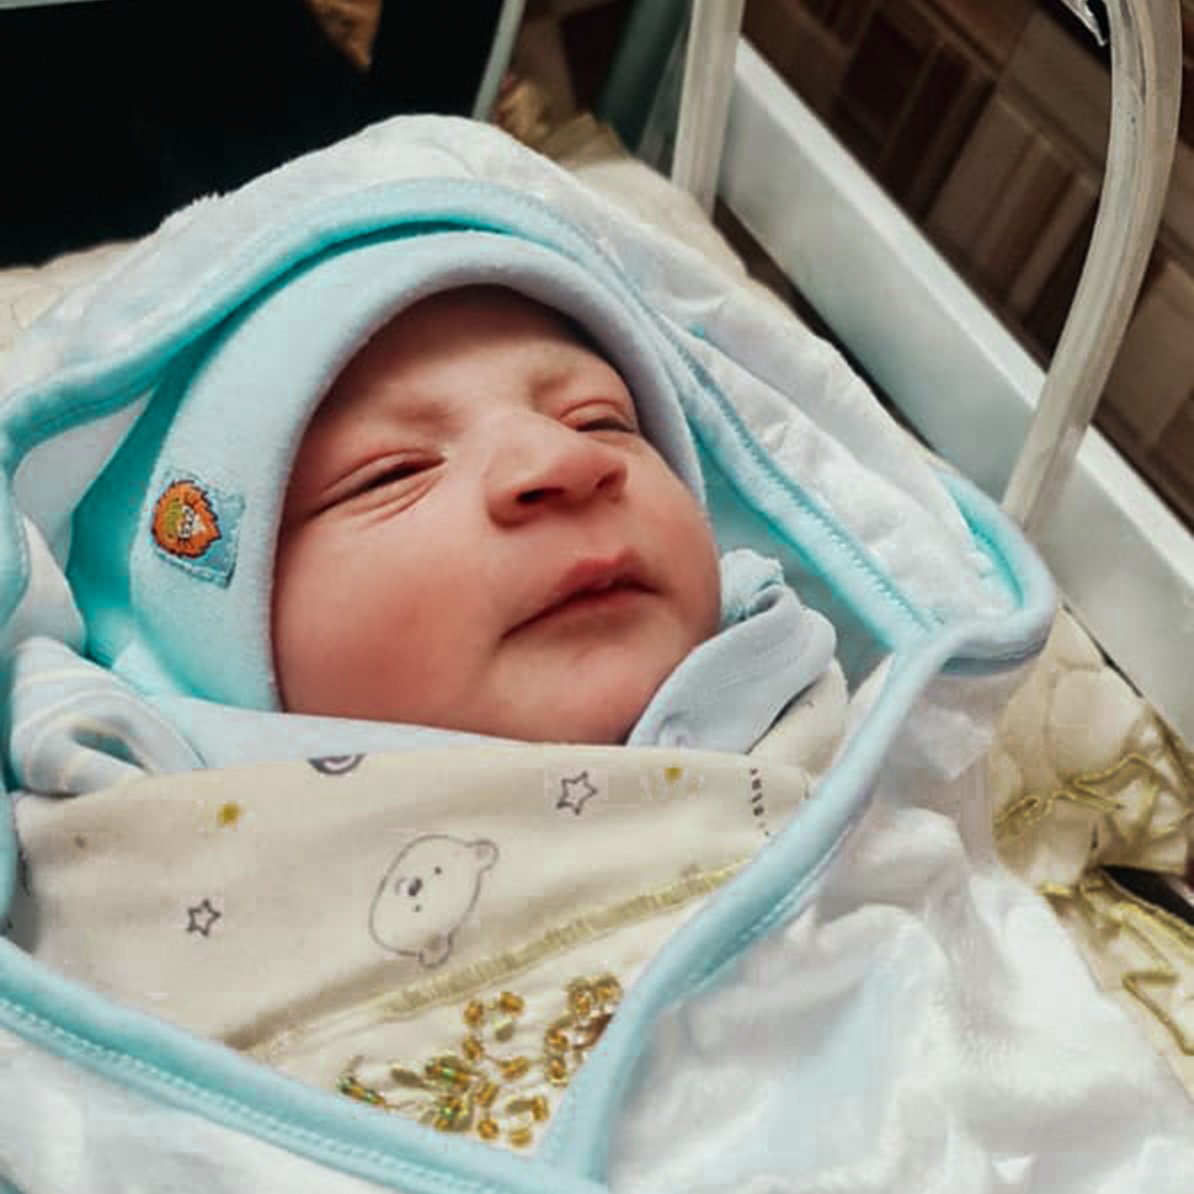 Darf ich vorstellen? Unser Neujahrsbaby in #Afghanistan: Genau 1 Minute nach Mitternacht ist dieser kleine Bub im von uns unterstützten #Boost-Krankenhaus in #LashkarGah #Helmand zur Welt gekommen. Zum Glück hatte seine Mama noch Zugang zu Gesundheitsversorgung ❤️